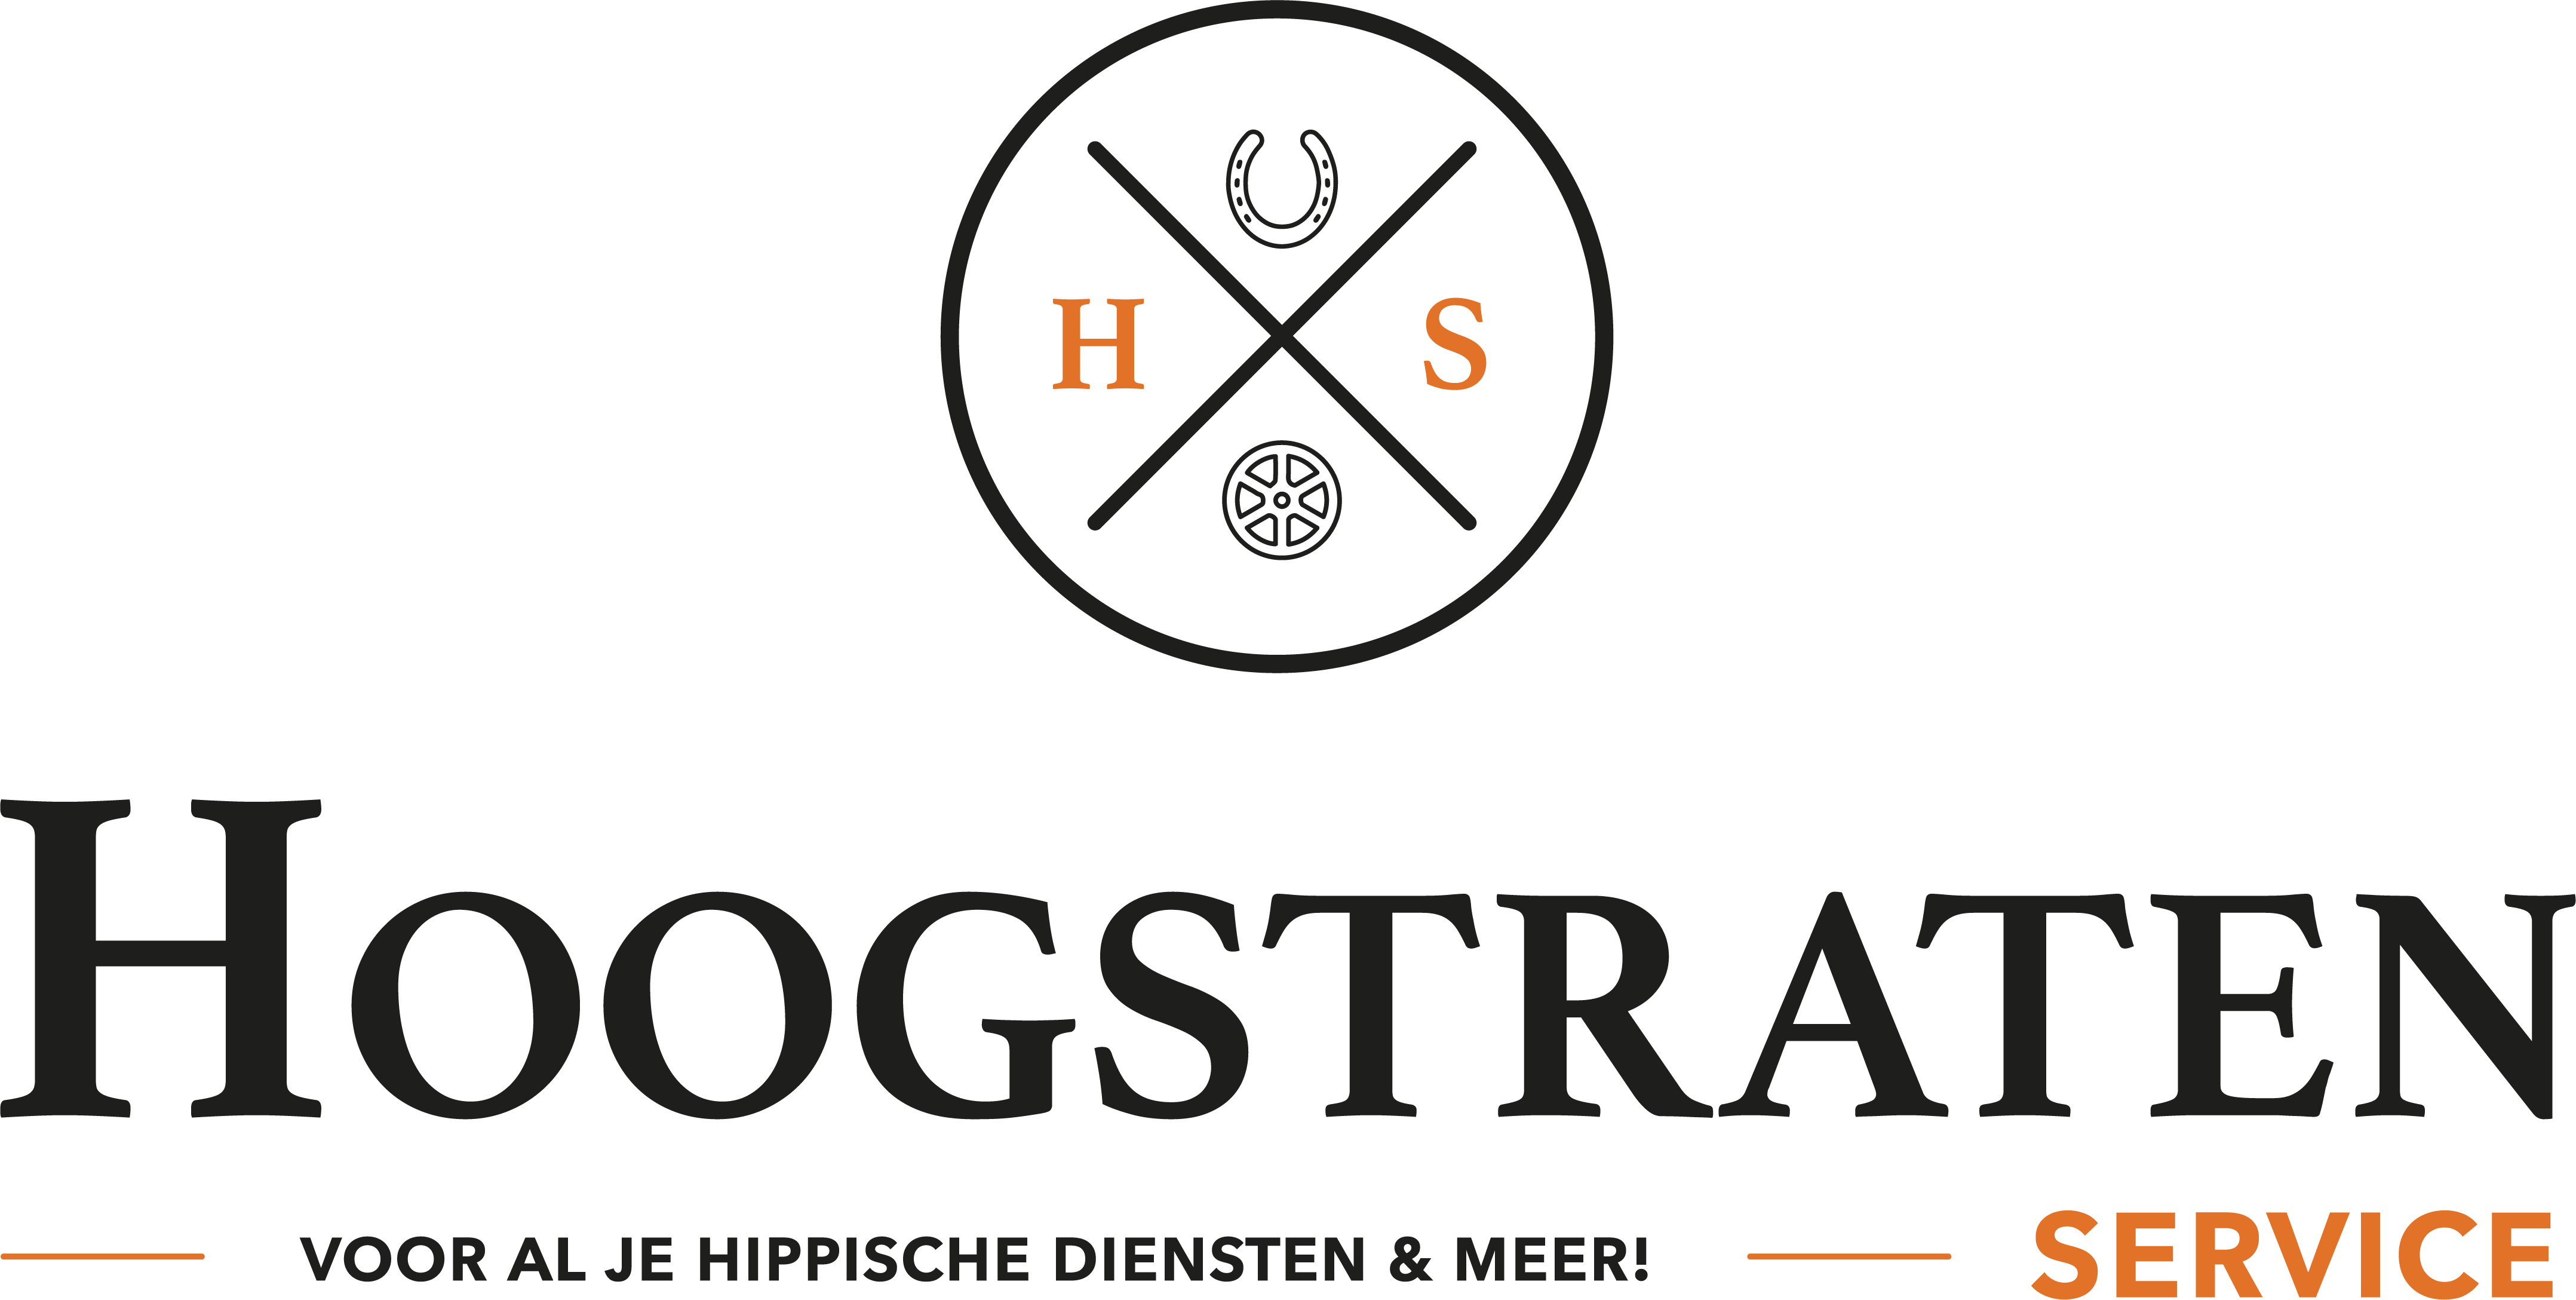 Hoogstraten Service | HService voor al je hippische diensten en meer! | Noord-Holland